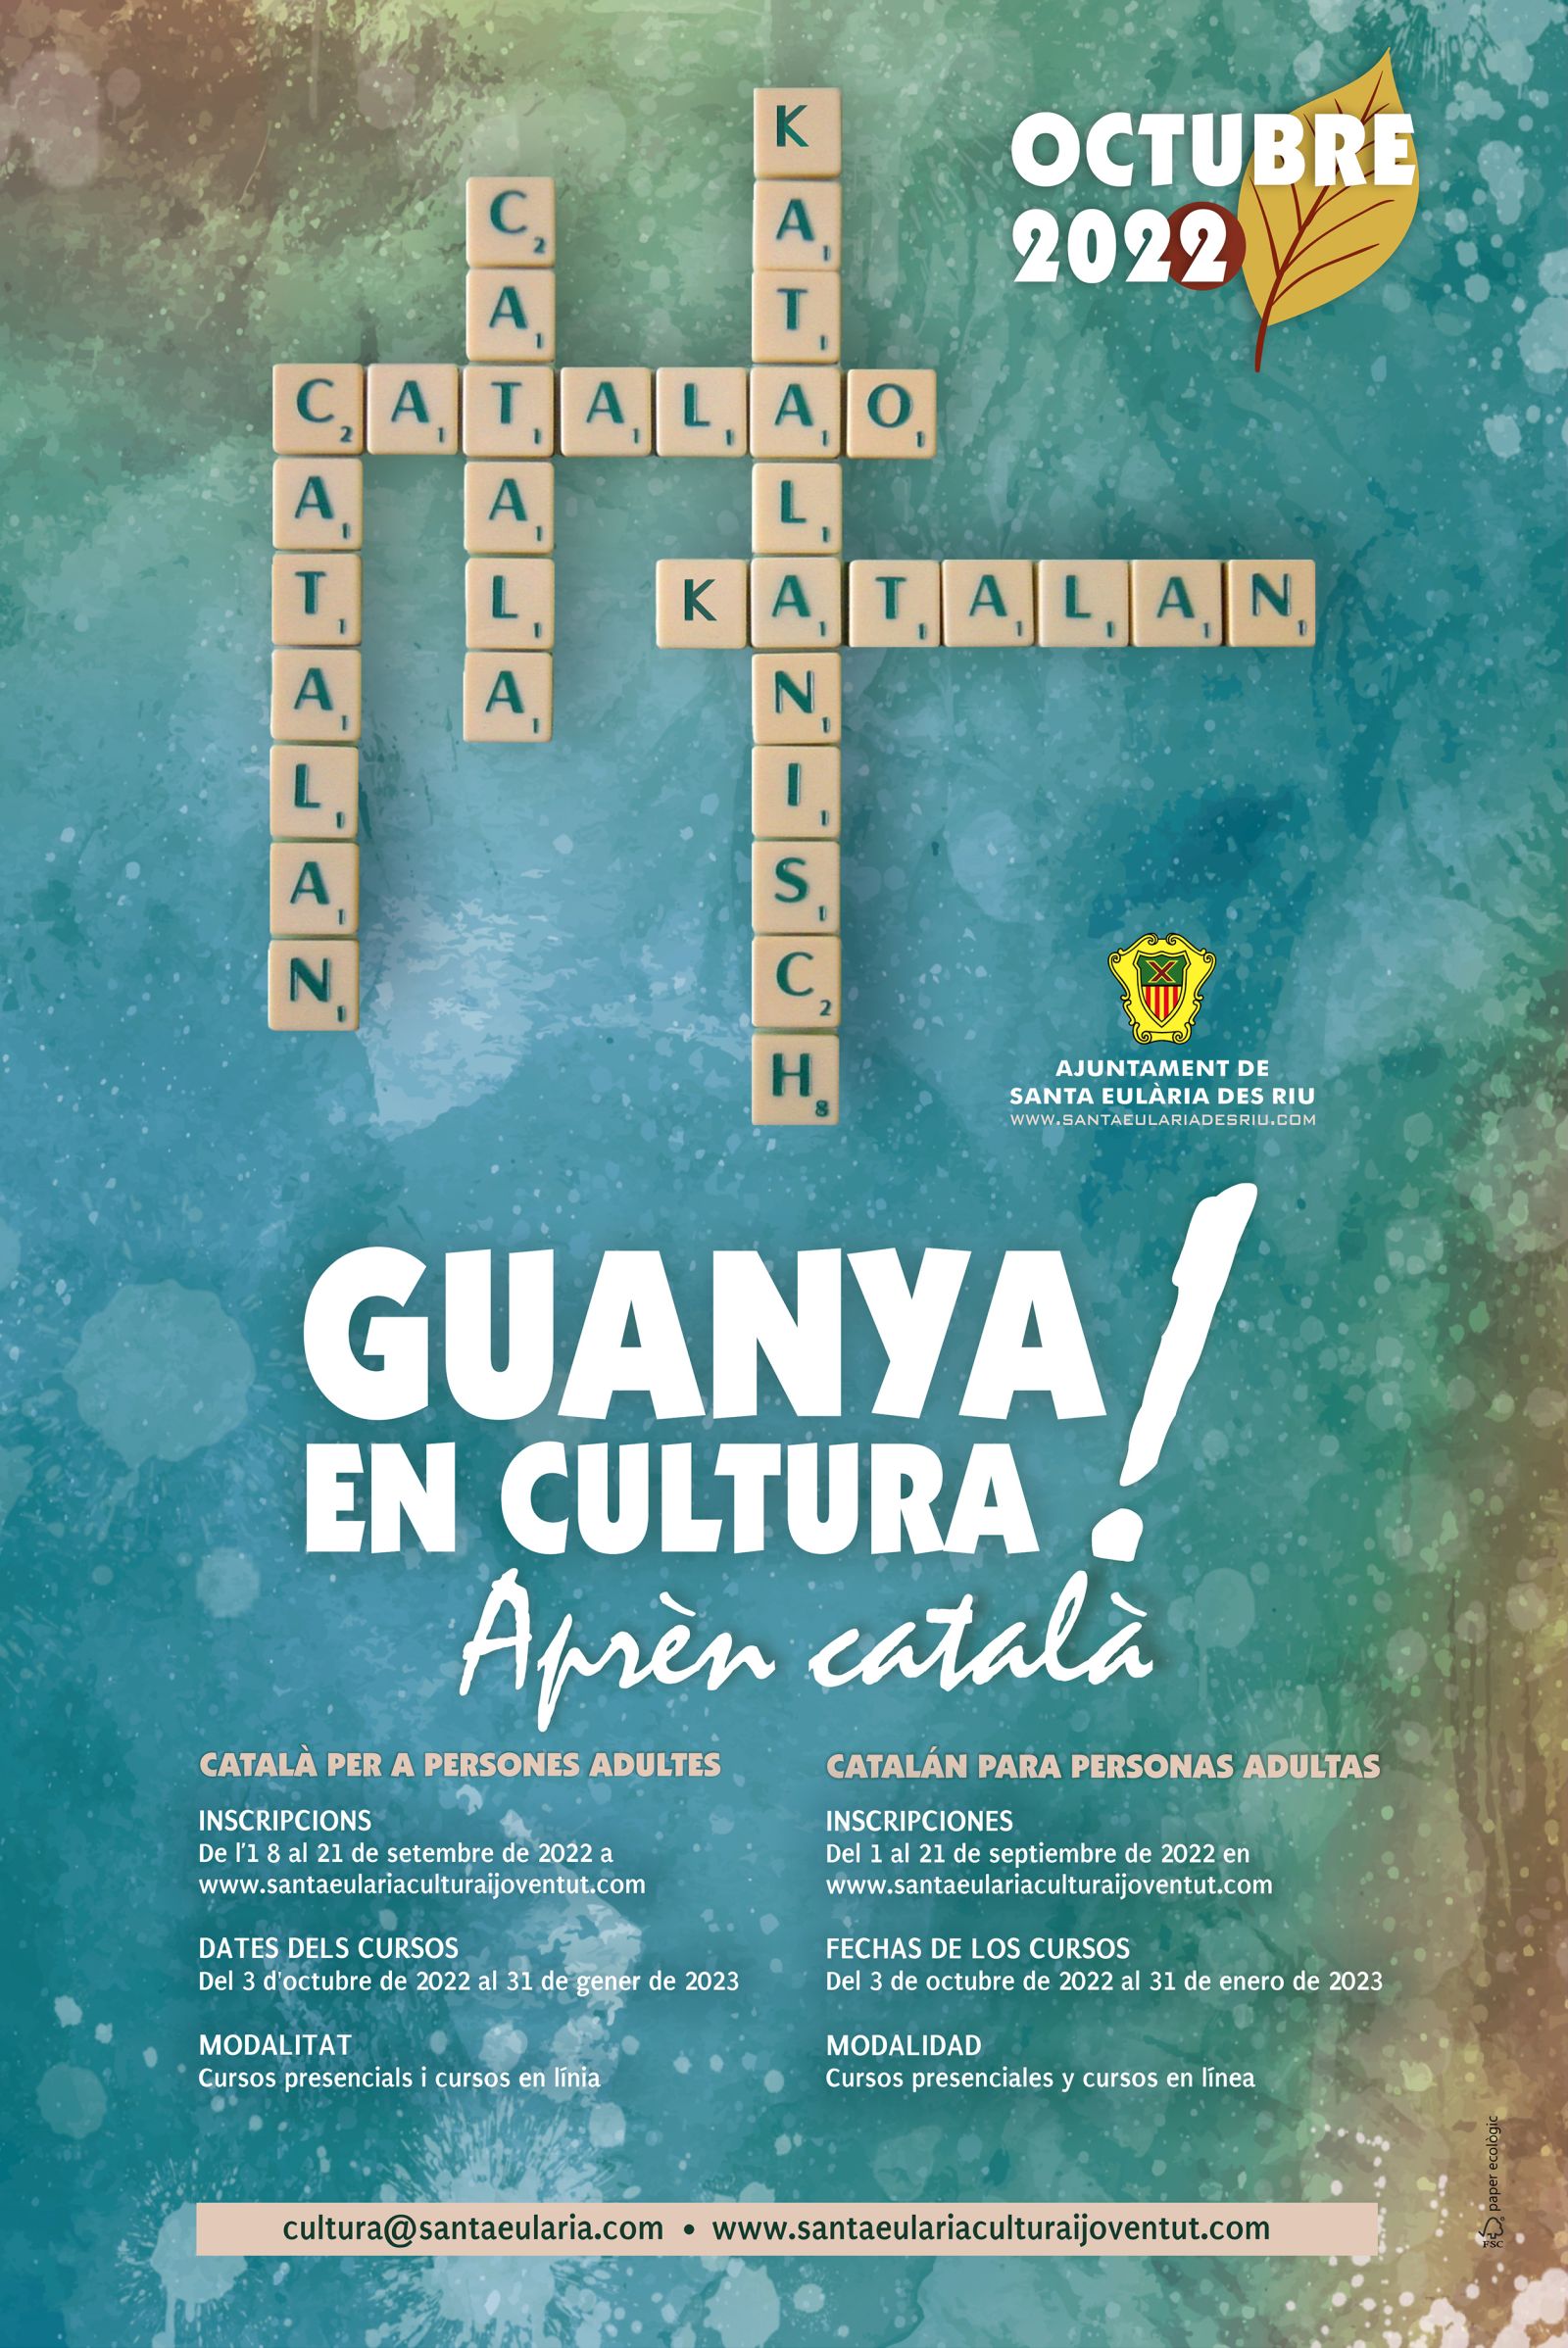 El próximo 1 de septiembre se abre el plazo para inscribirse a los cursos de catalán del Ayuntamiento